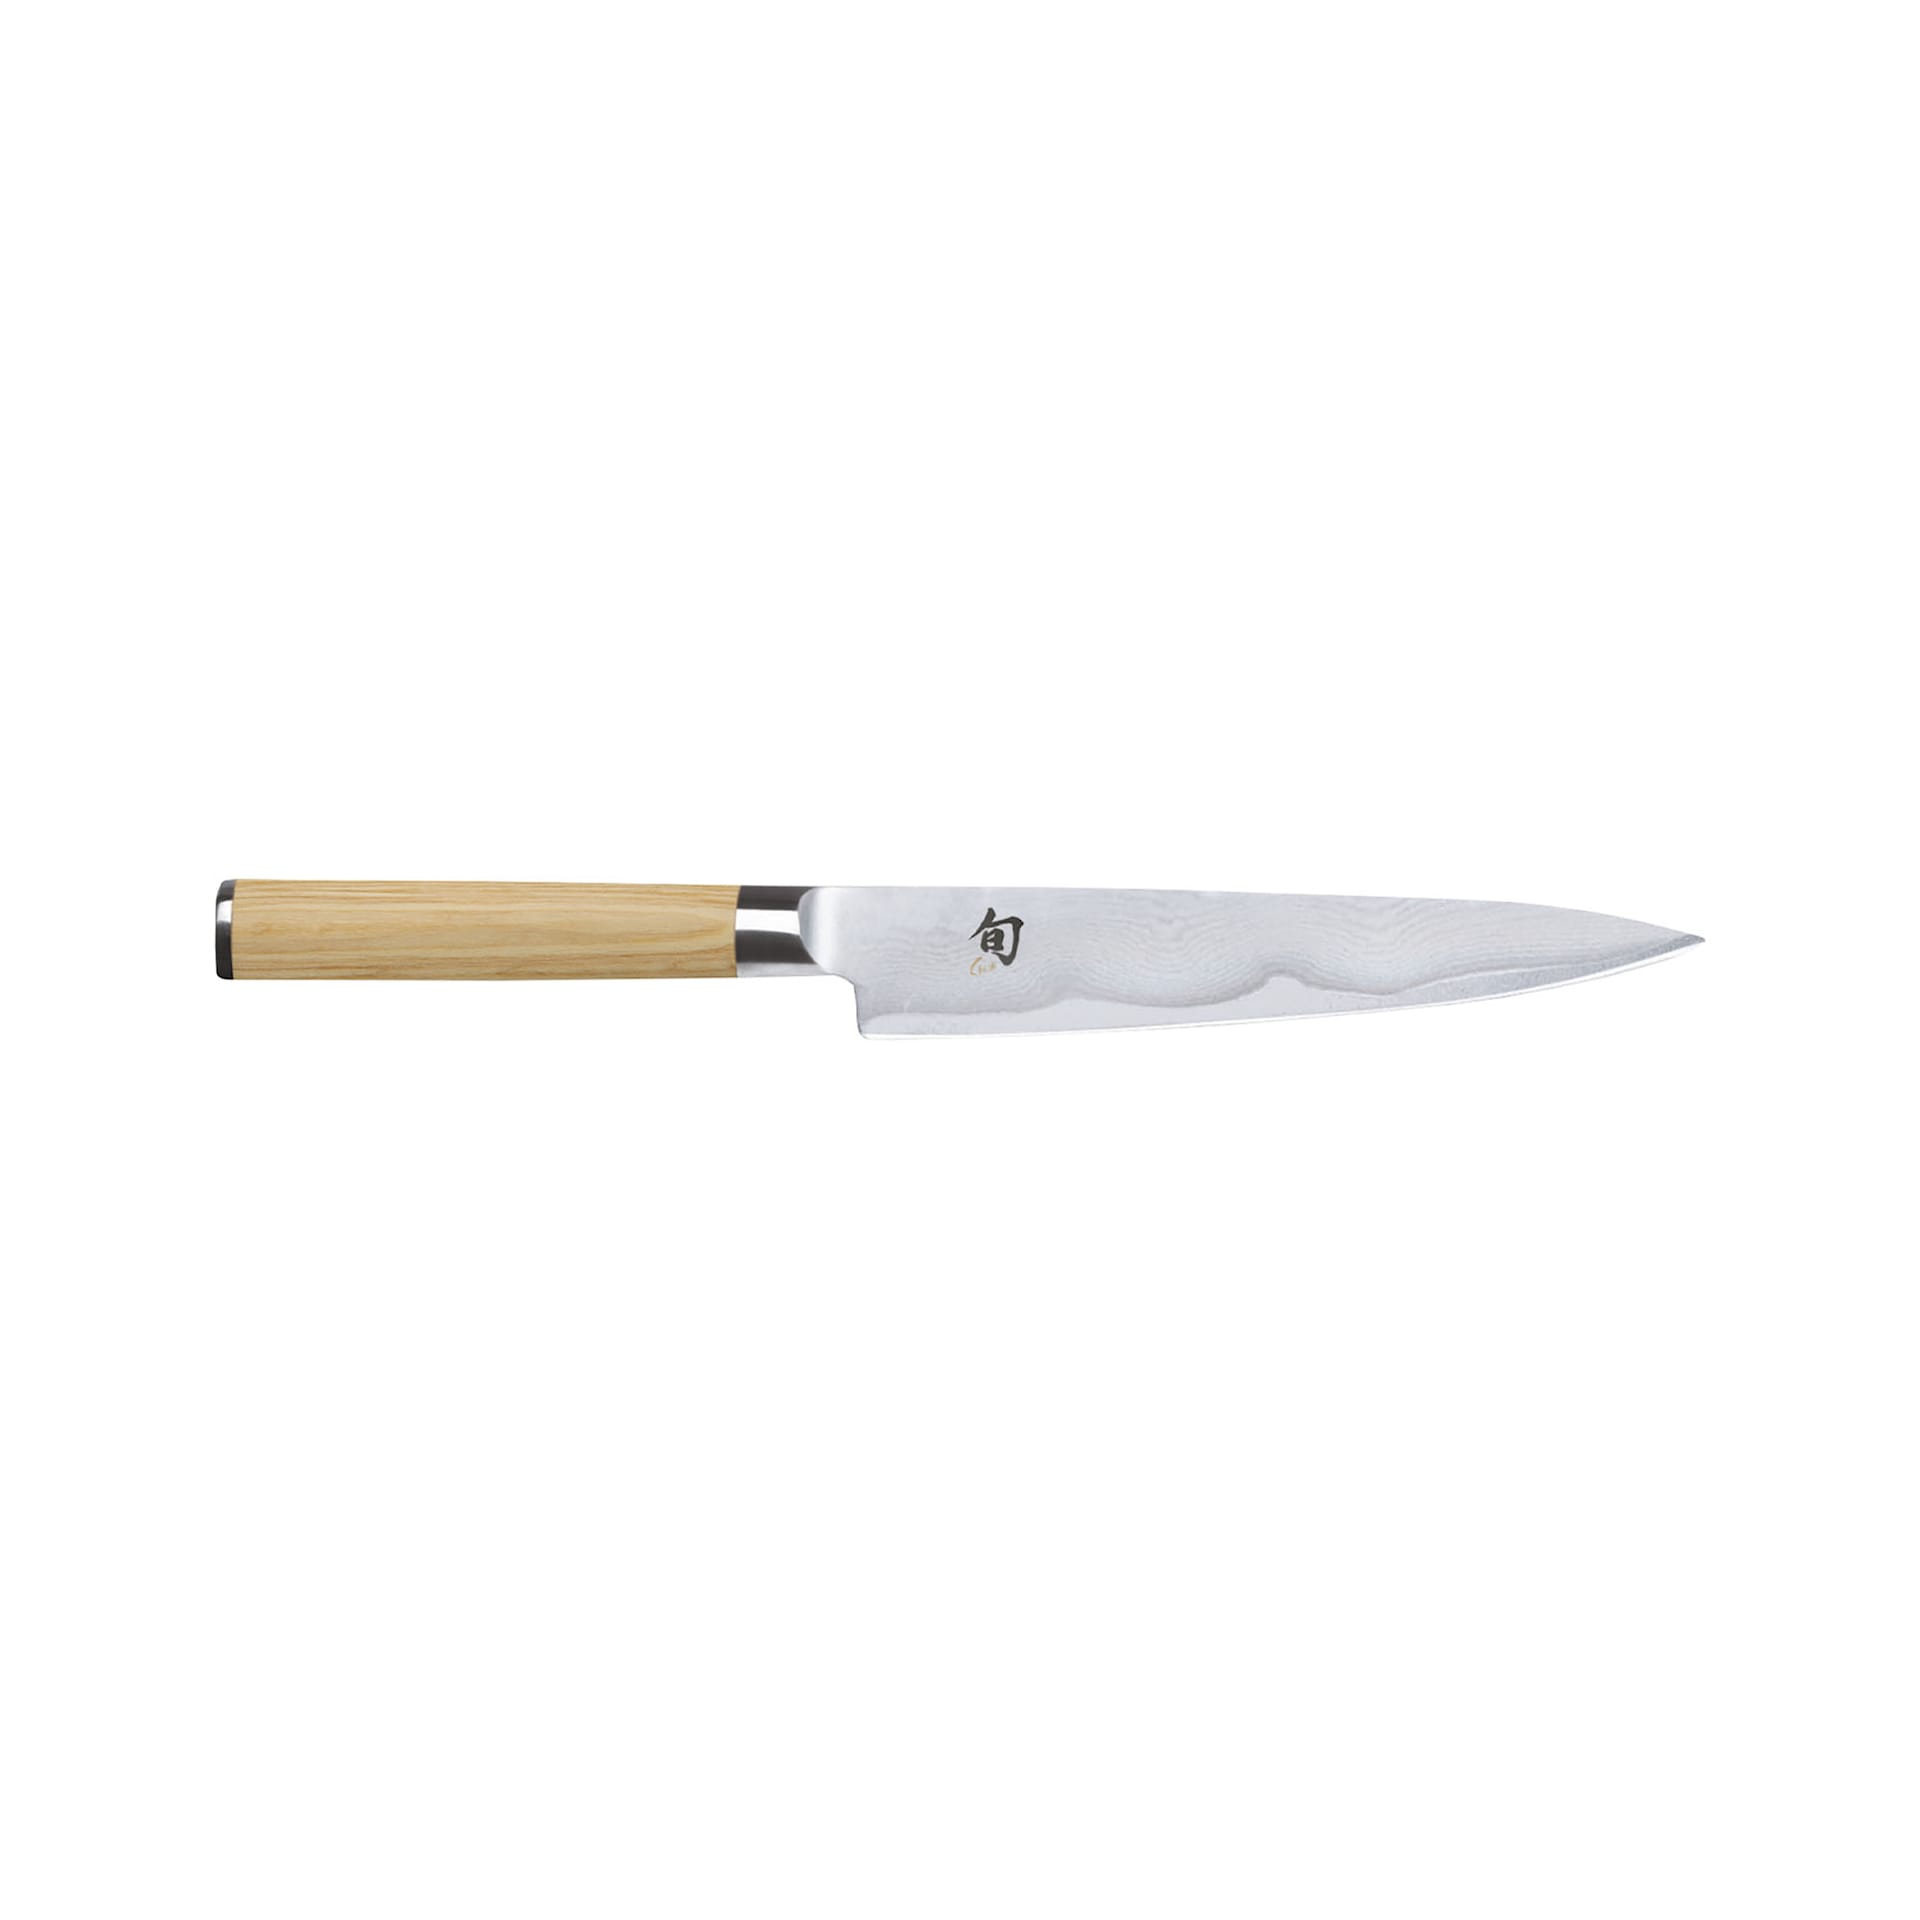 SHUN CLASSIC universalkniv, 15 cm Lyst skaft - KAI - NO GA